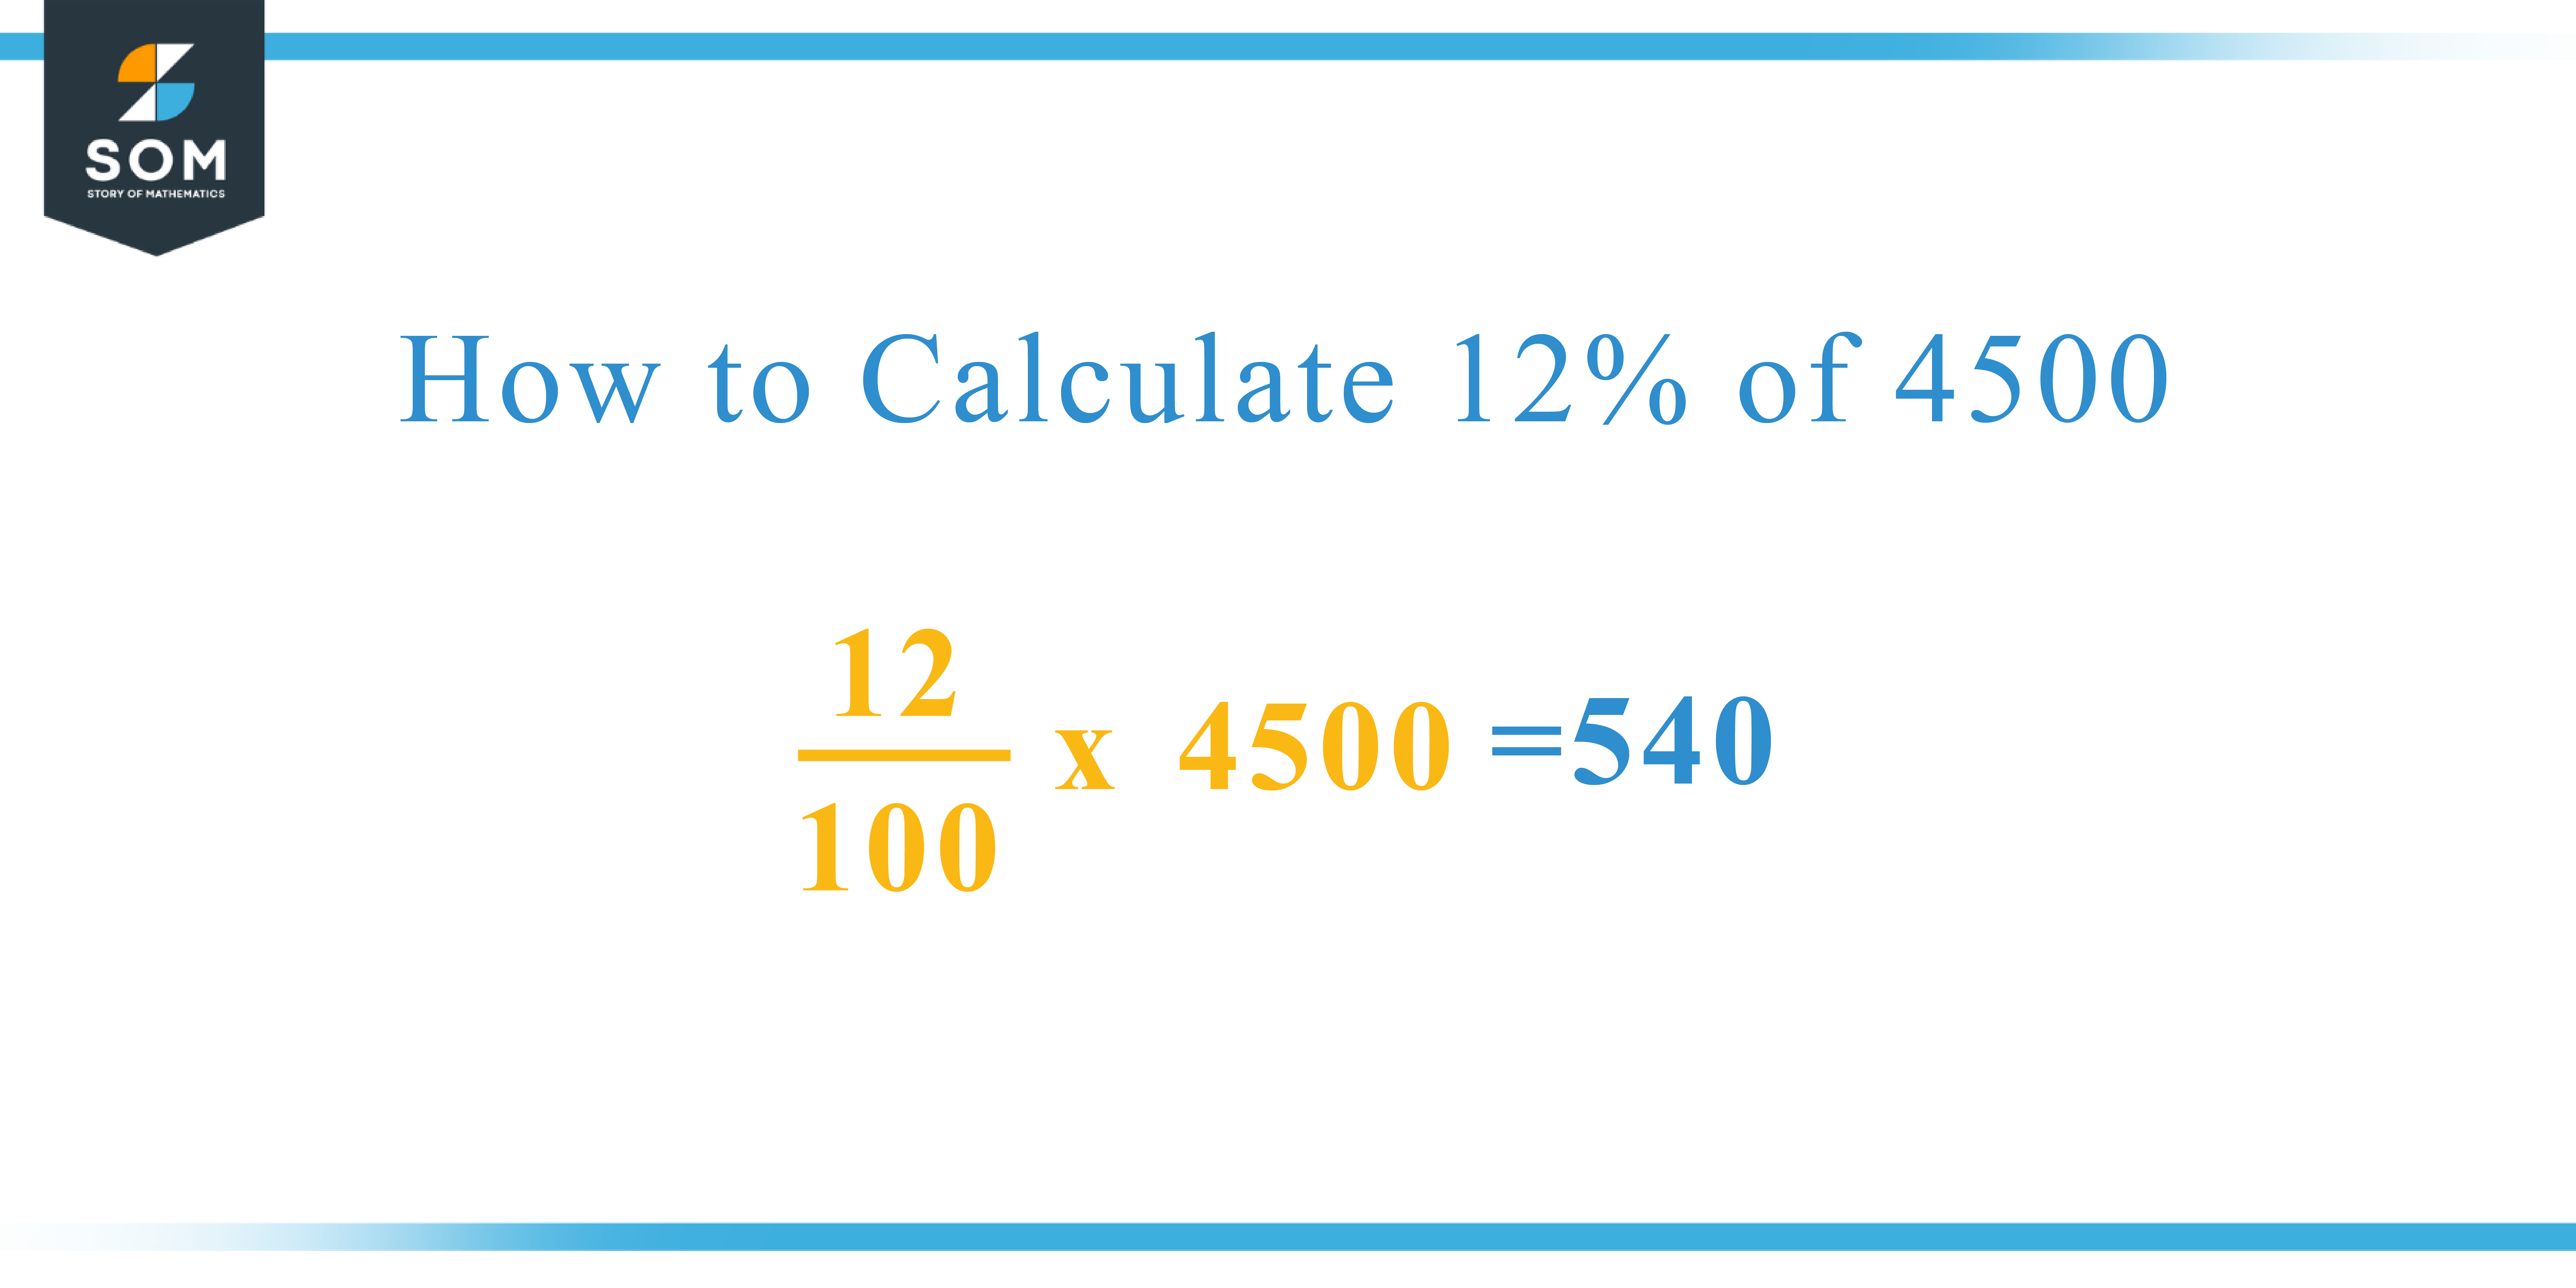 Calculation 12 percent of 4500